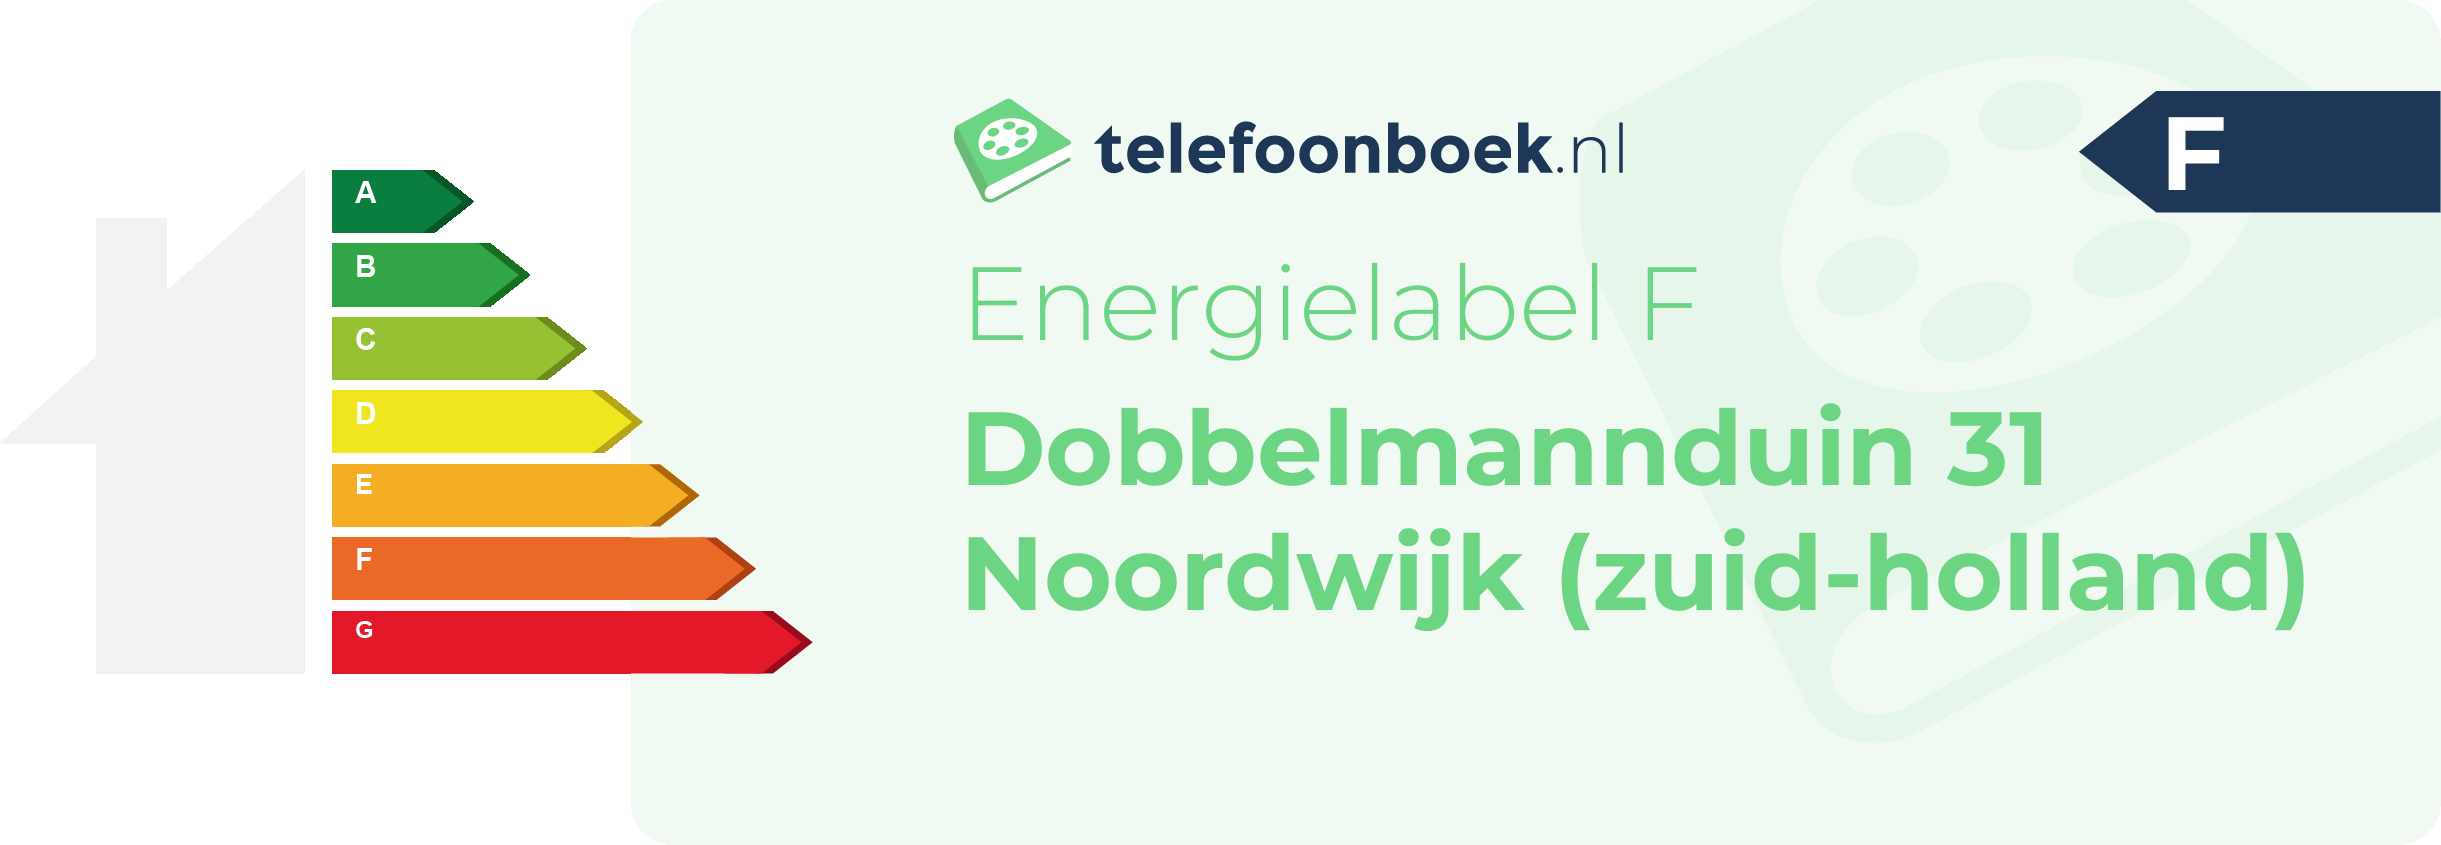 Energielabel Dobbelmannduin 31 Noordwijk (Zuid-Holland)